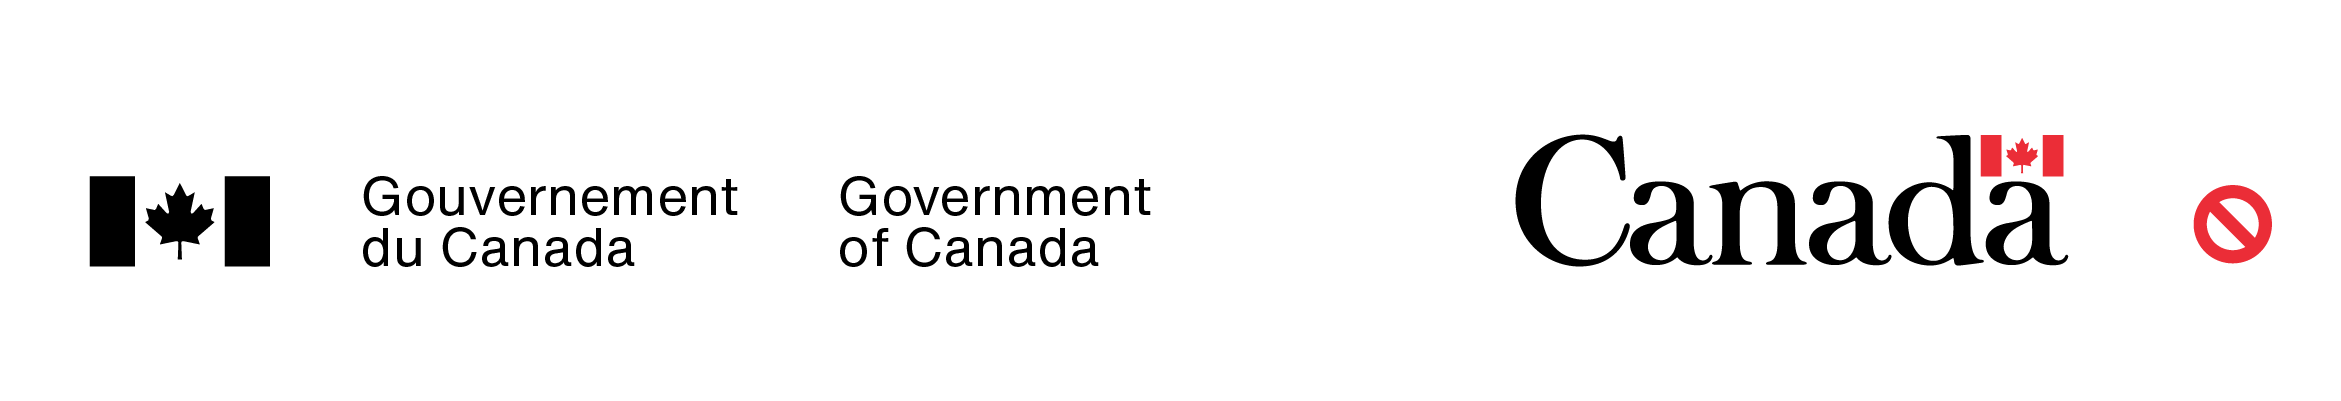 Exemple du mauvais jumelage de couleurs (les couleurs utilisées pour le symbole du drapeau dans la signature du gouvernement du Canada diffèrent de celles utilisées pour le symbole du drapeau dans le mot-symbole « Canada »).